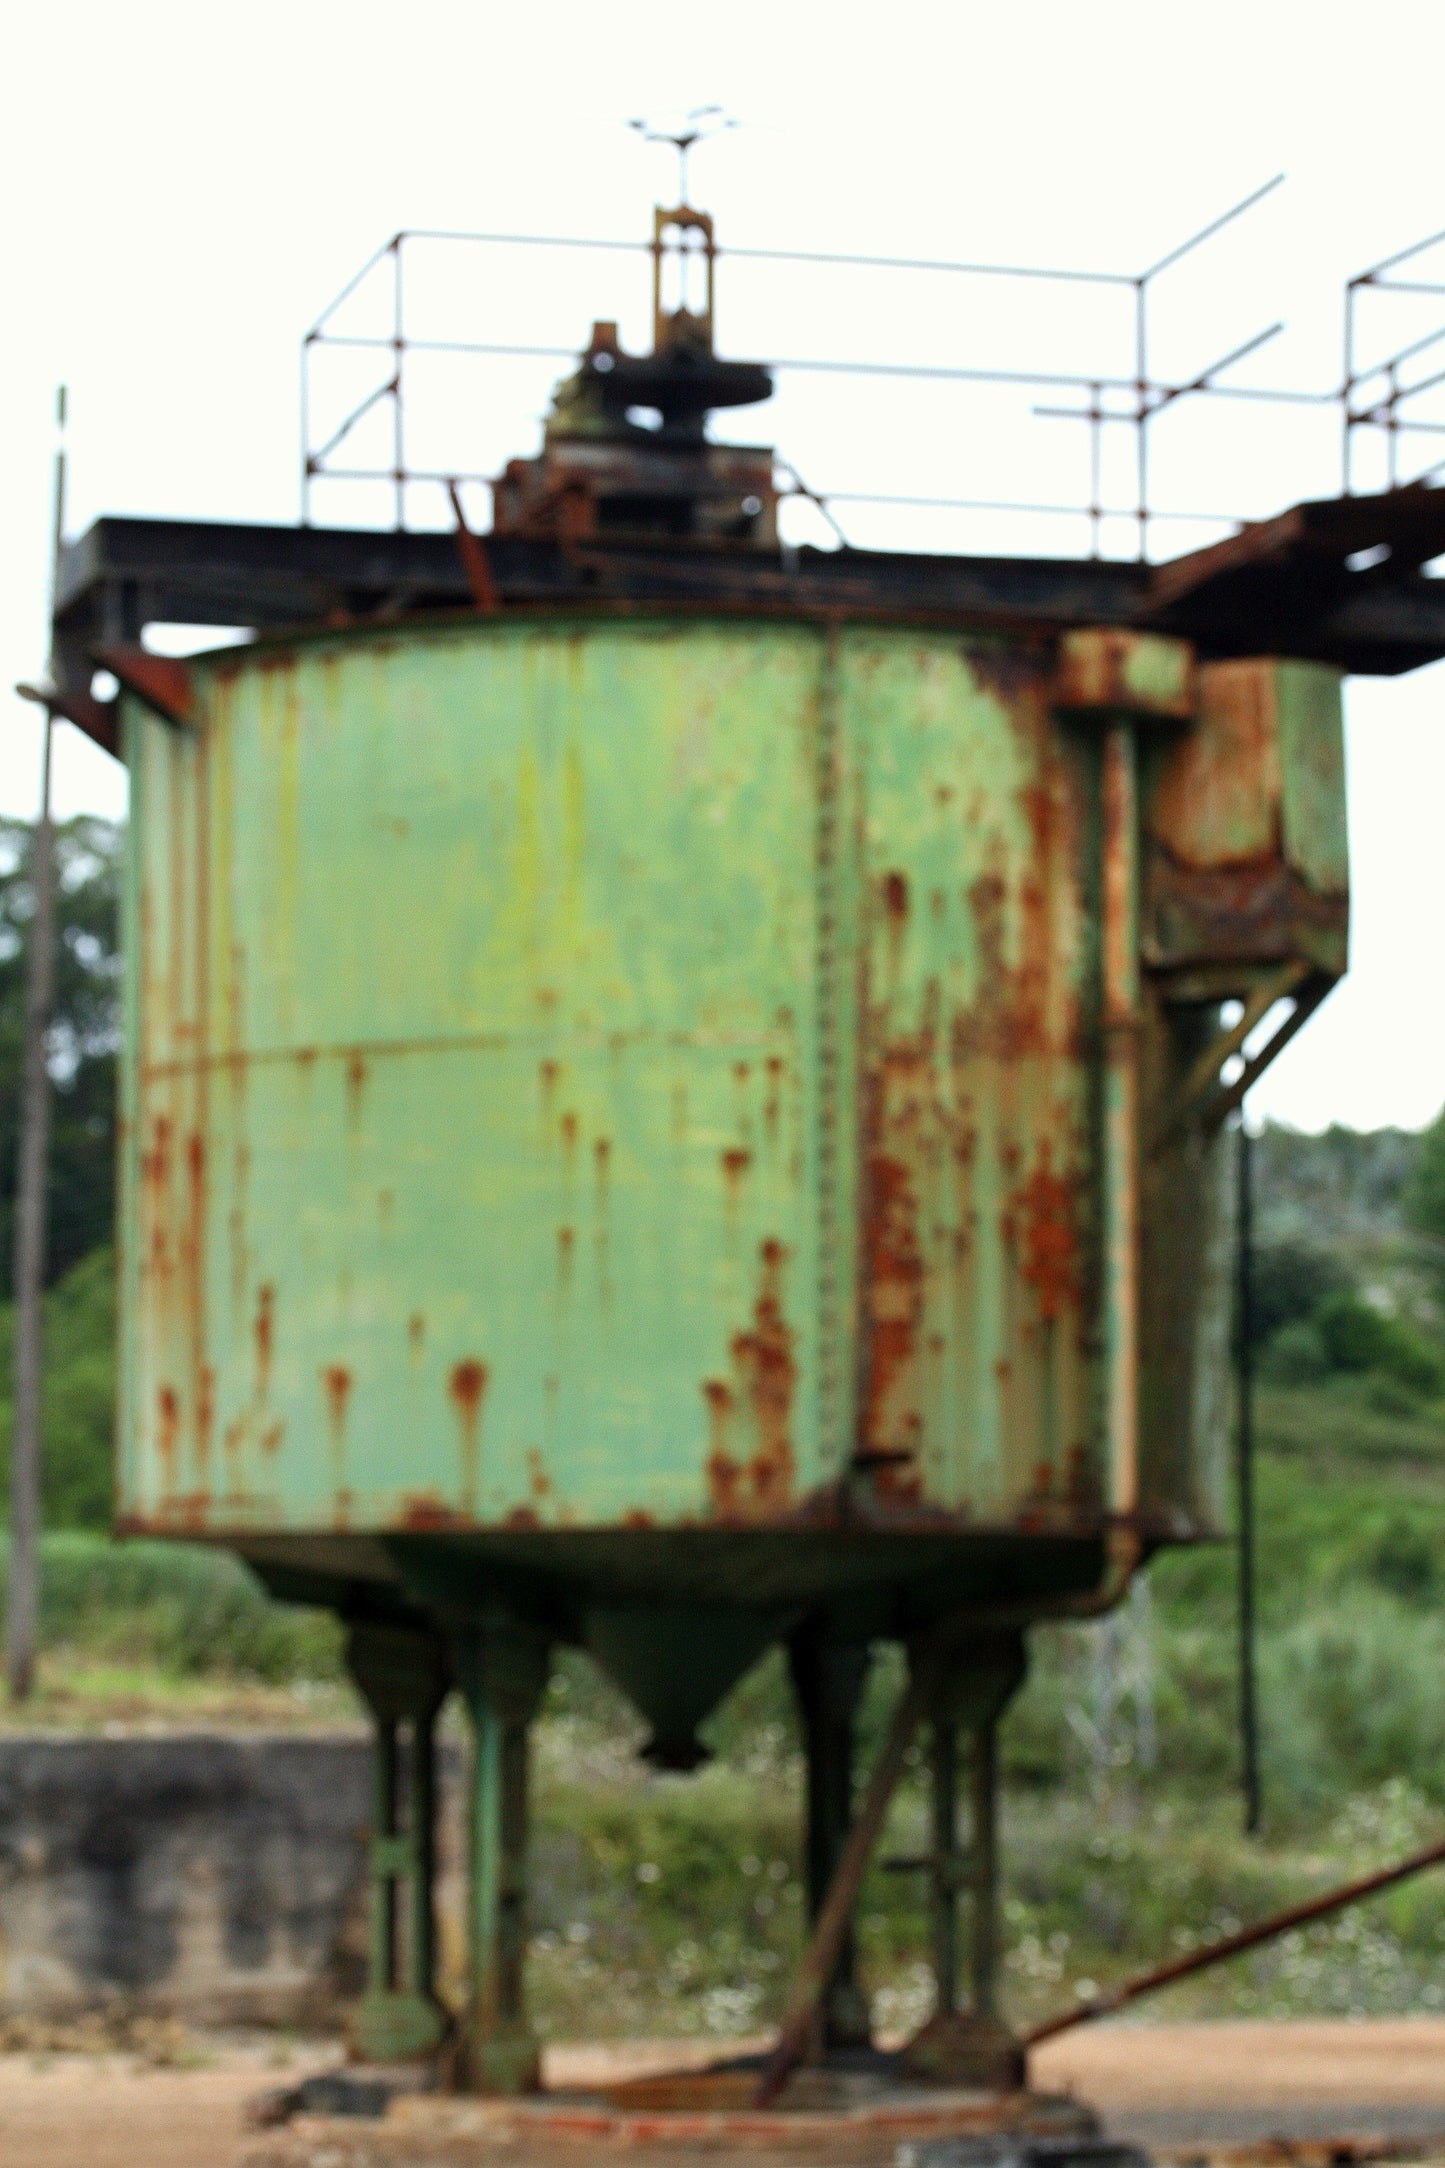 Depósito de la mina abandonada, fotografía